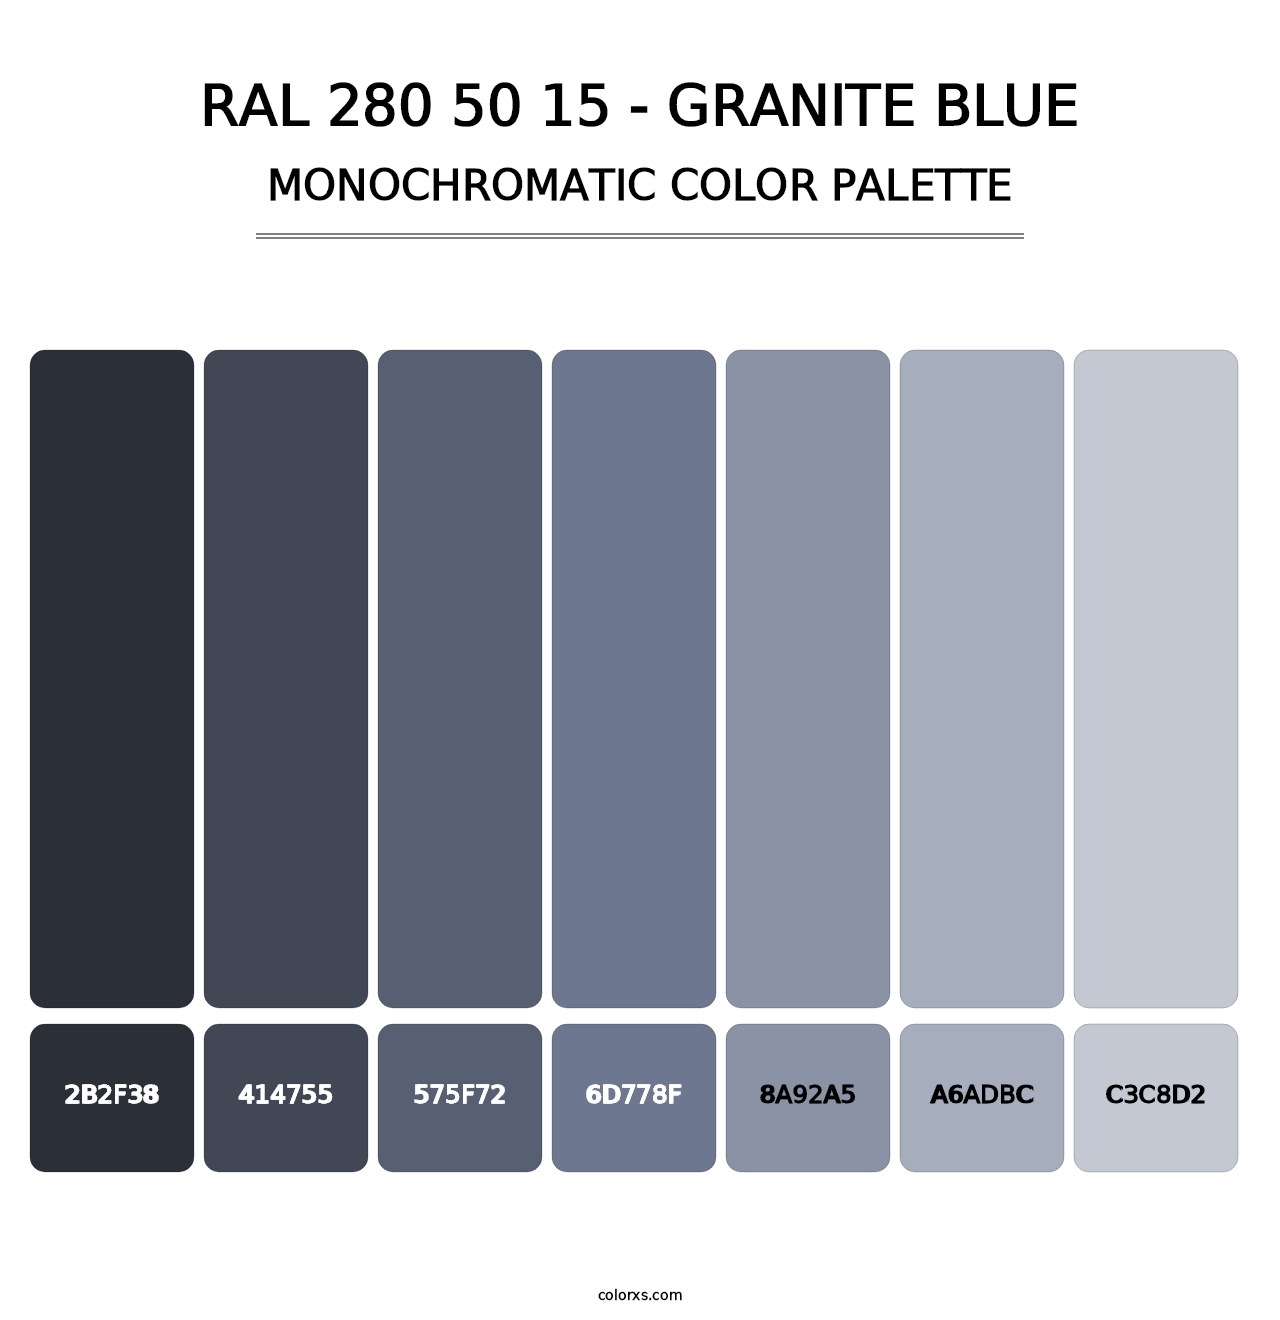 RAL 280 50 15 - Granite Blue - Monochromatic Color Palette